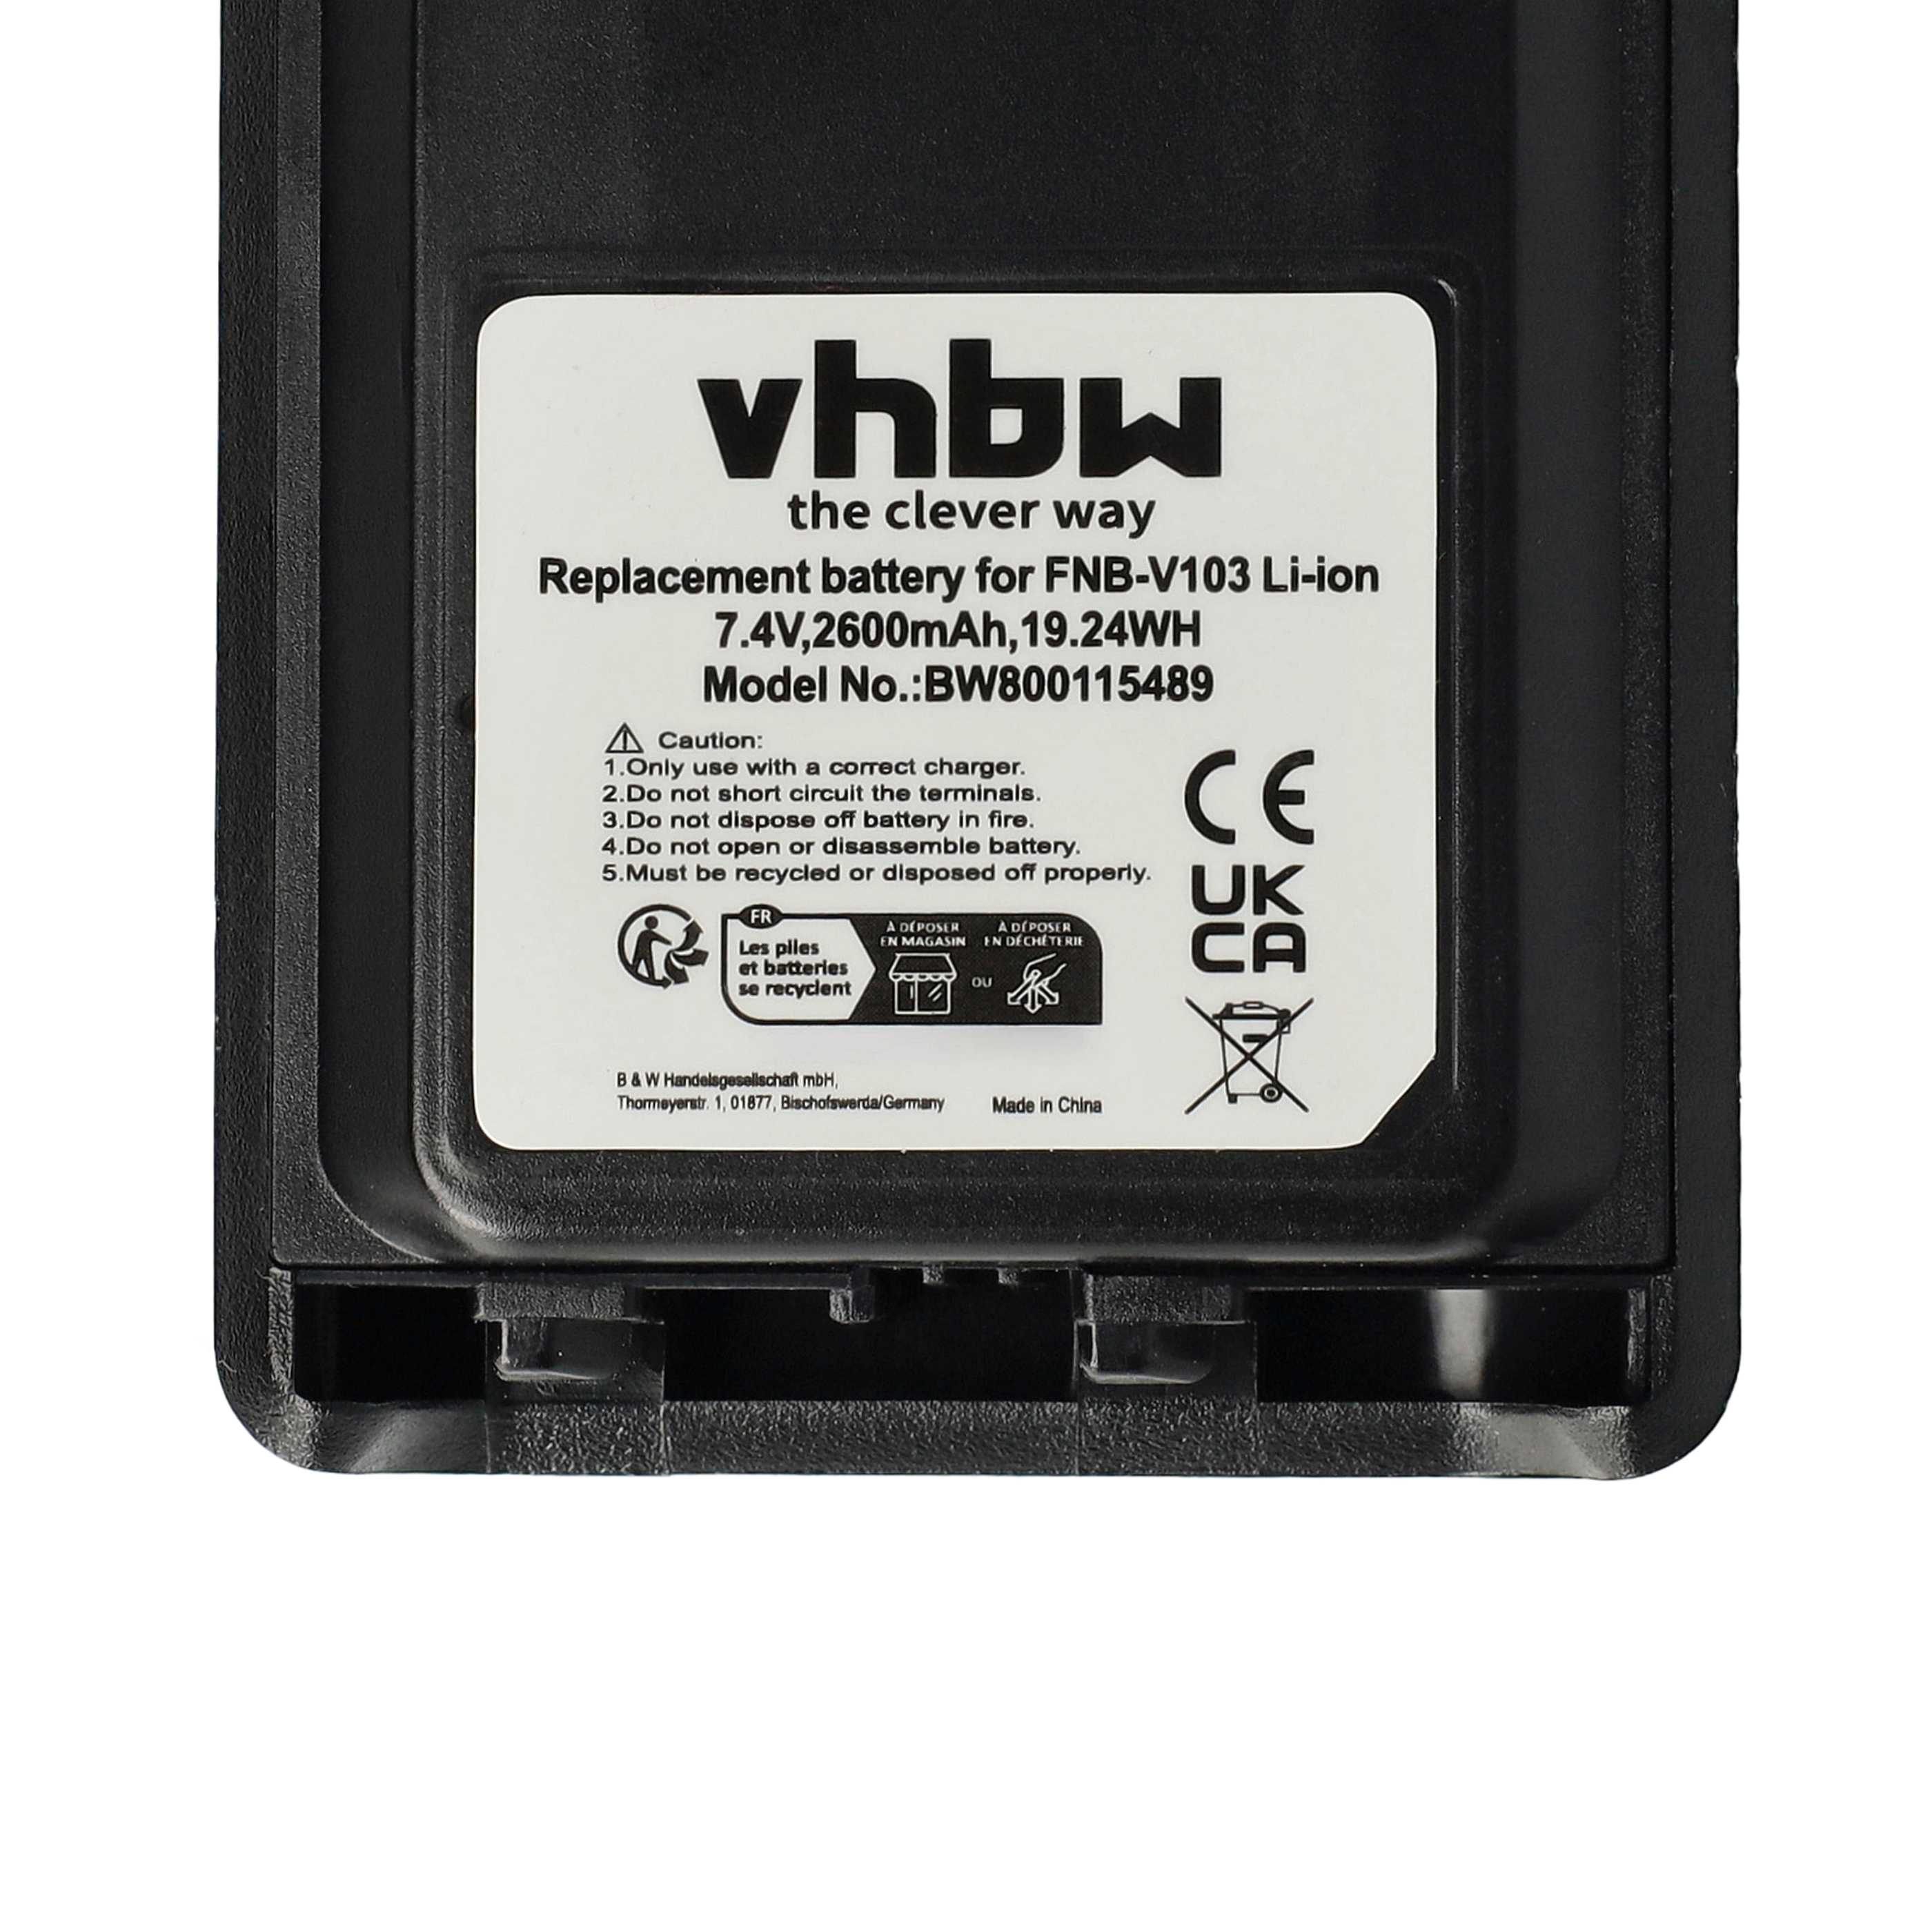 Batterie remplace Yaesu / Vertex FNB-V103, FNB-V104, FNB-V103LI pour radio talkie-walkie - 2600mAh 7,4V Li-ion